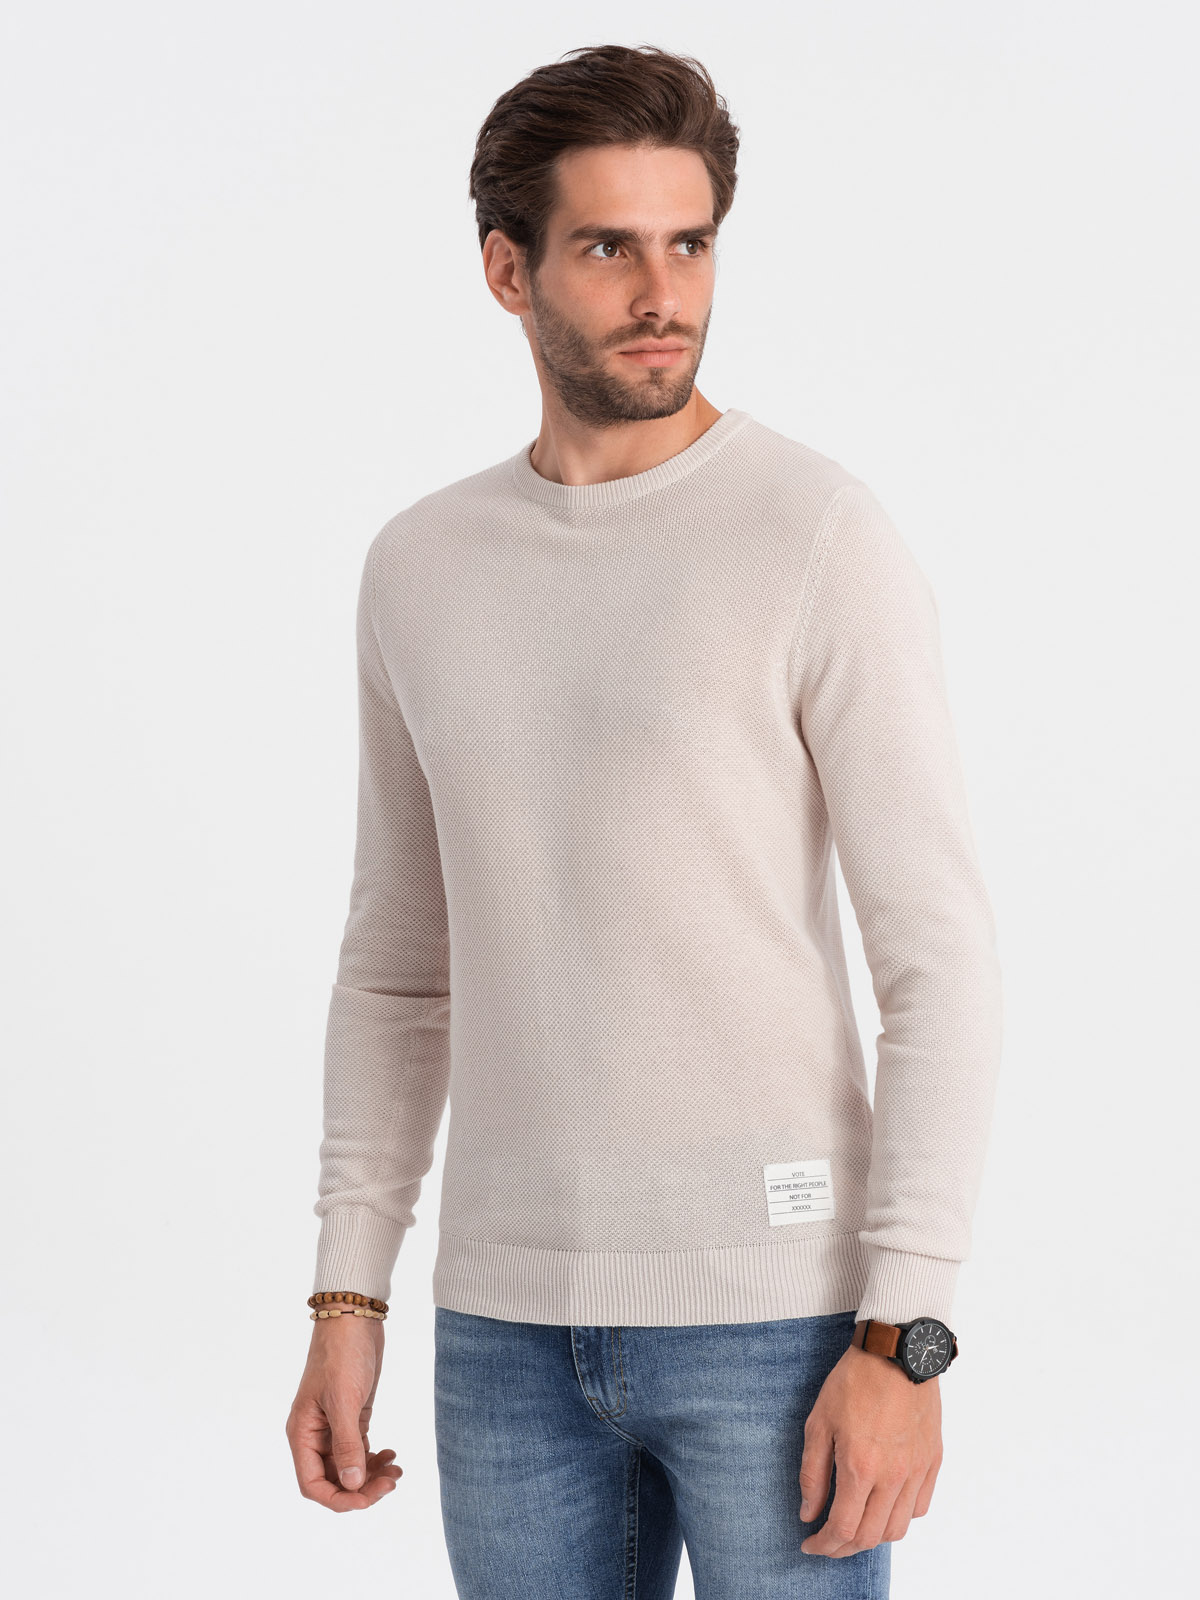 Ombre Men's textured sweater with half round neckline - beige